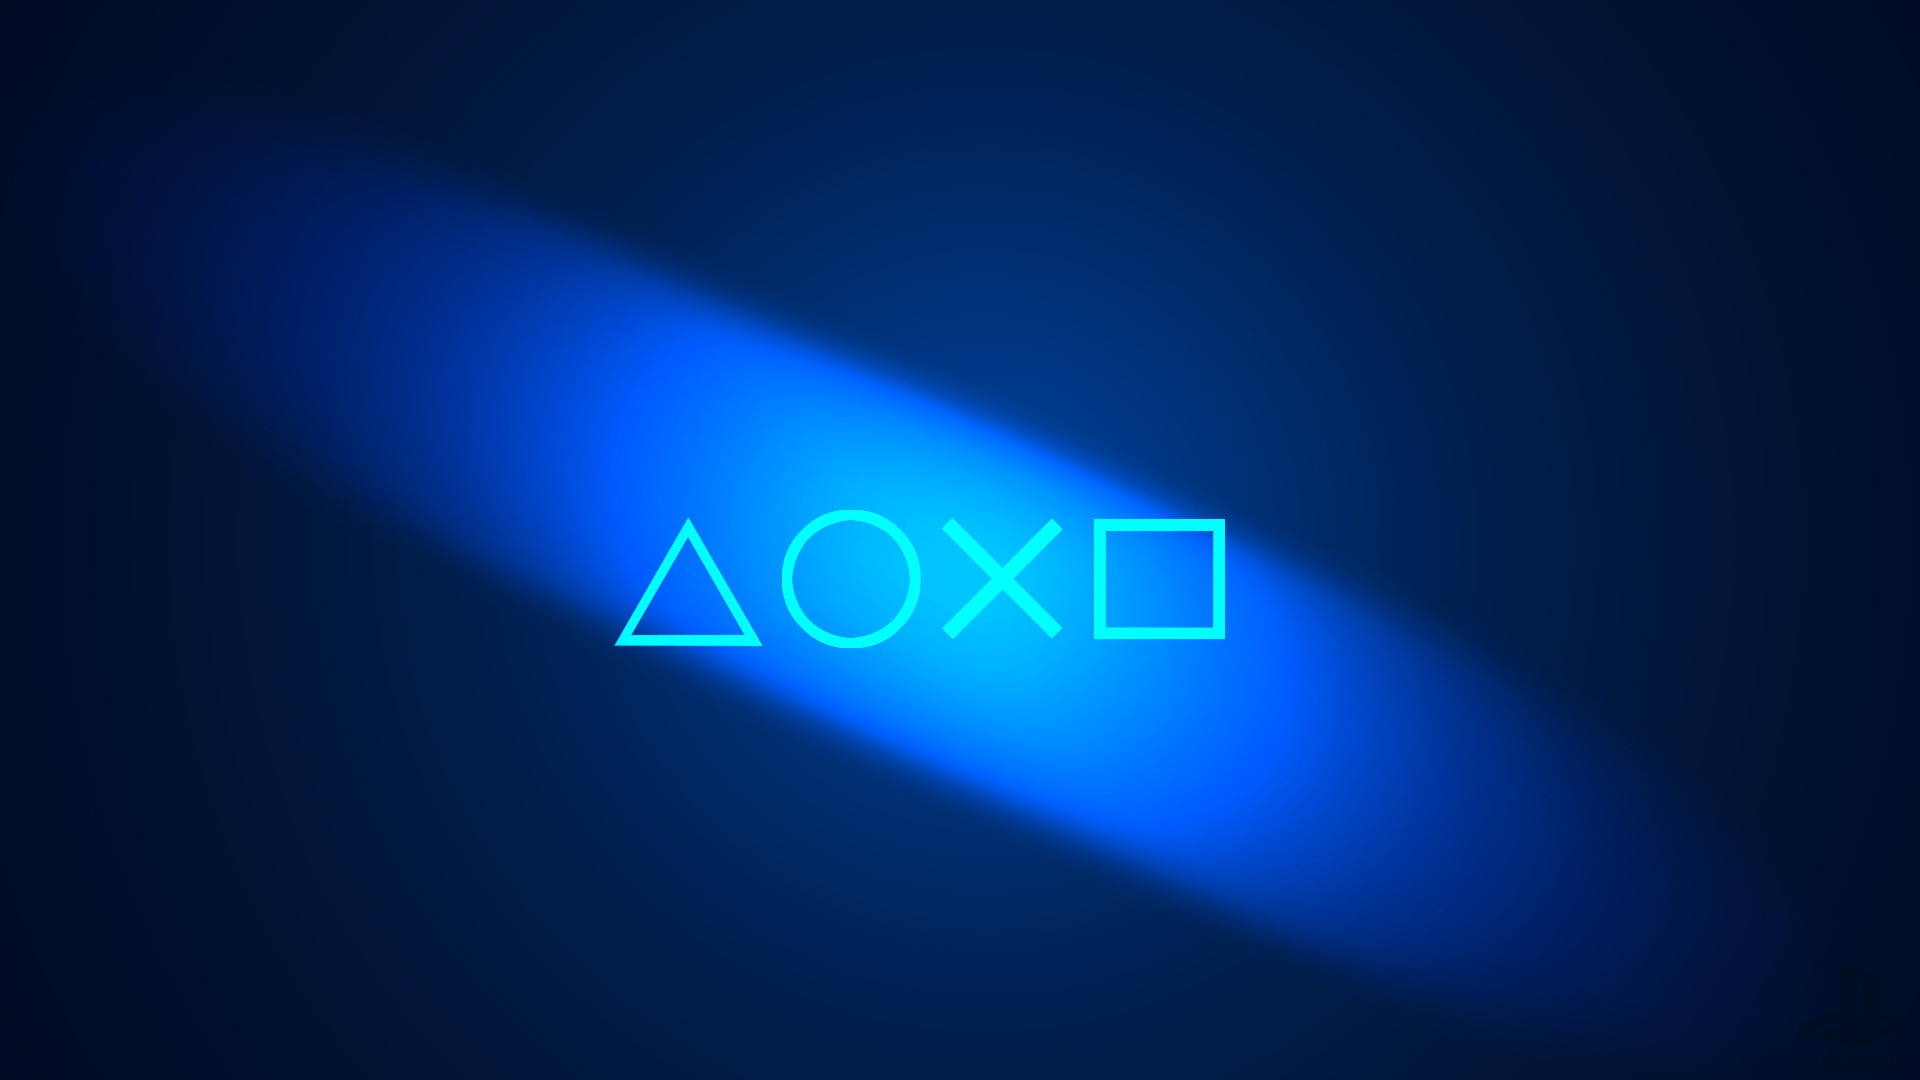 Piada: Sony afirma que Fortnite não tem crossplay porque 'ela é melhor